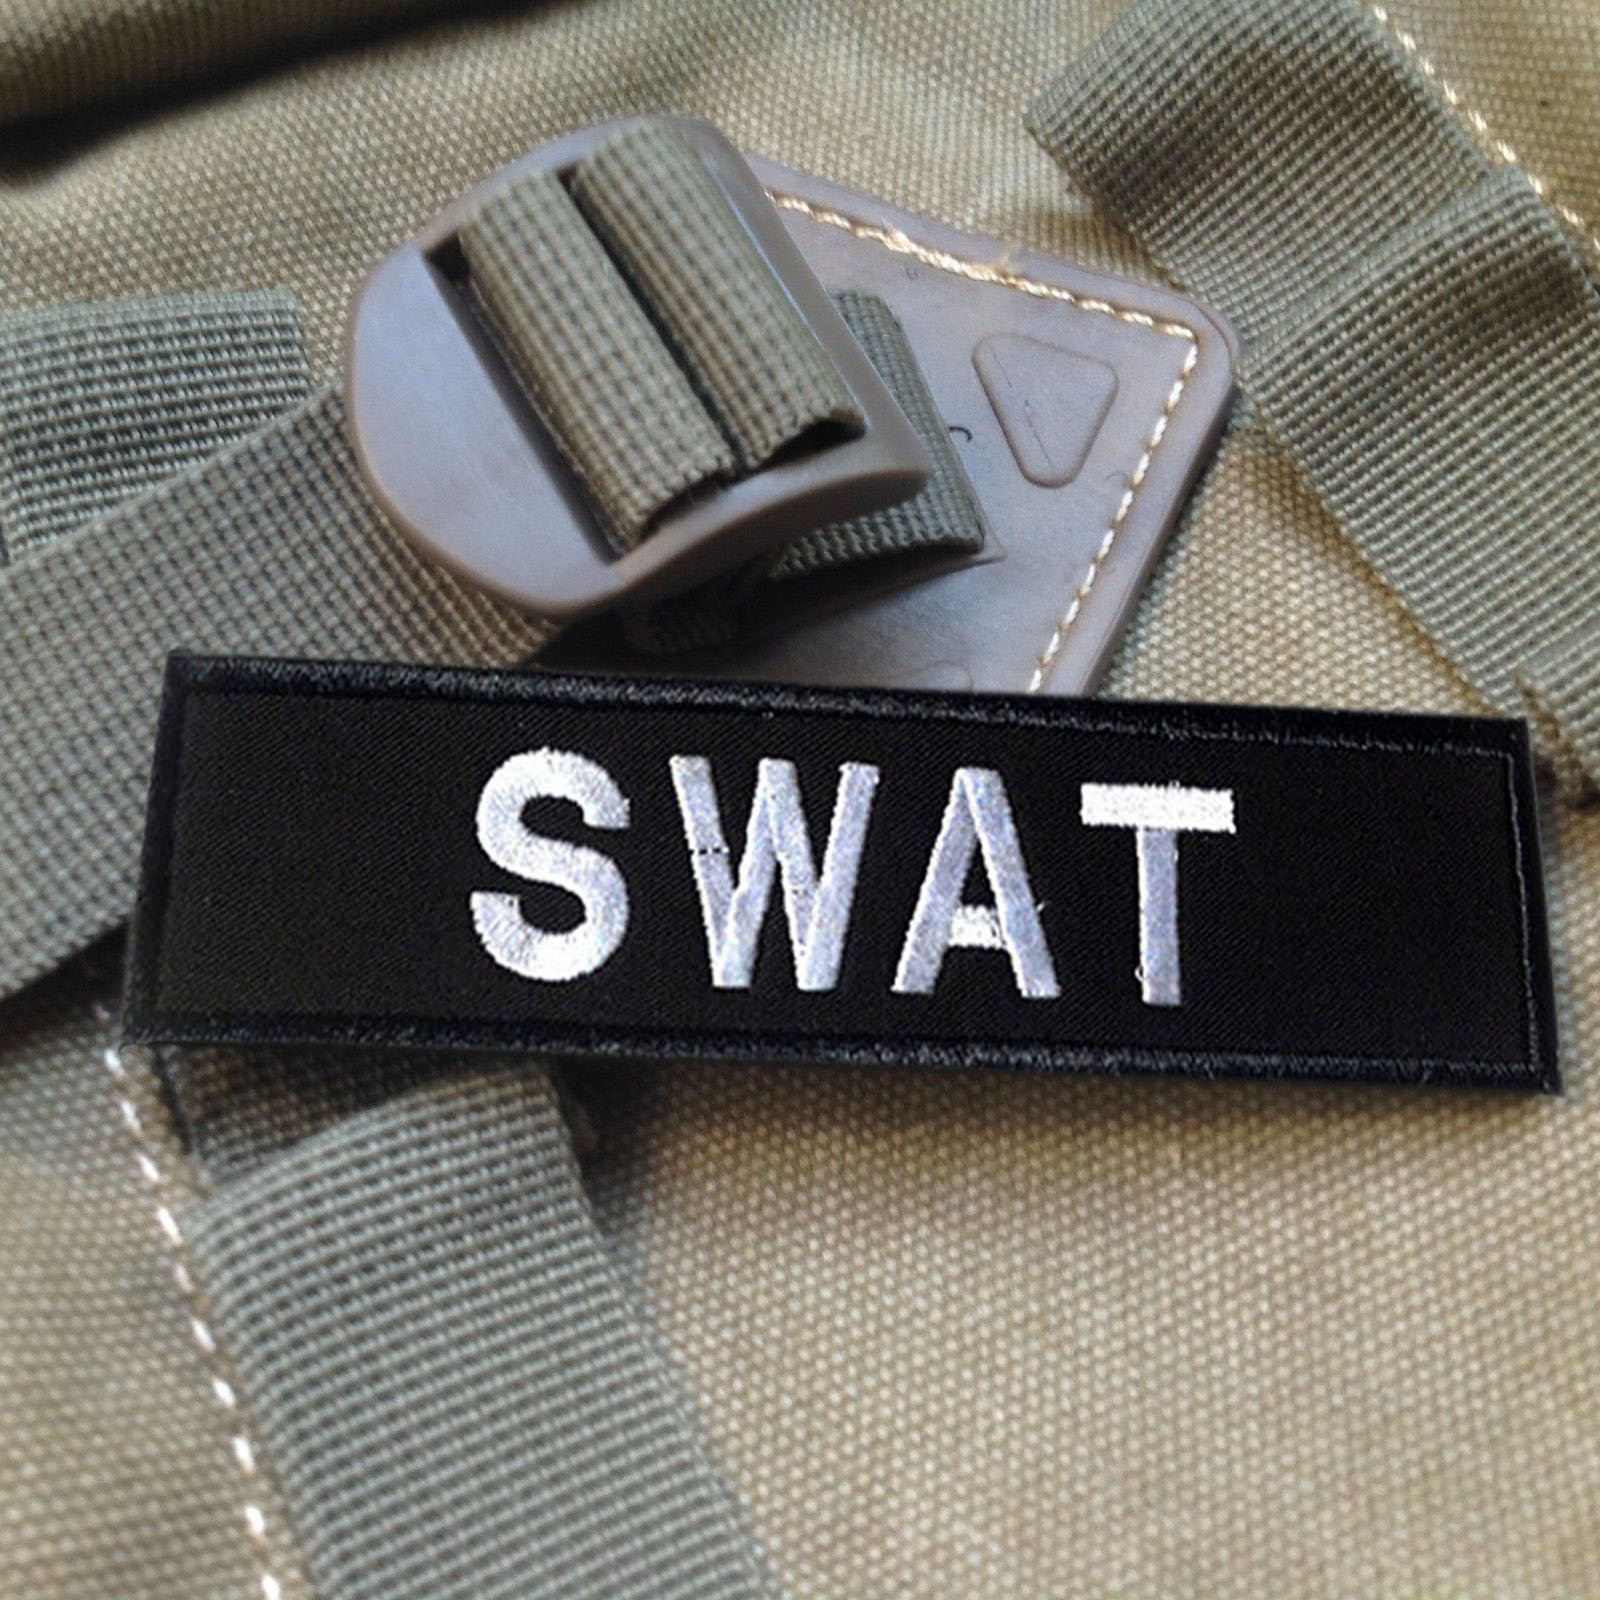 查看淘宝美国反恐精英swat美国特警3d刺绣魔术贴军事臂章补丁肩章贴黑